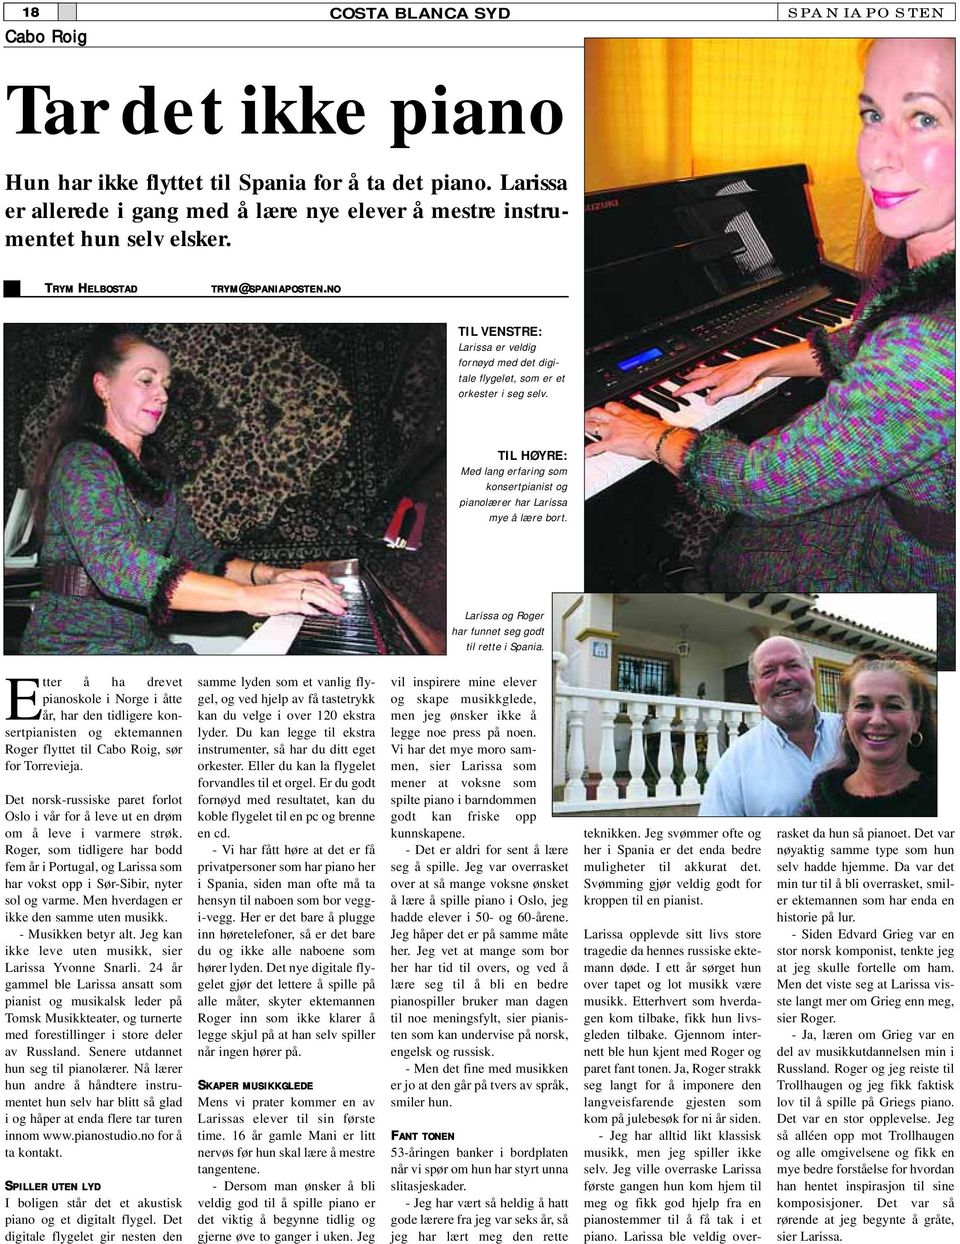 TIL HØYRE: Med lang erfaring som konsertpianist og pianolærer har Larissa mye å lære bort. Larissa og Roger har funnet seg godt til rette i Spania.